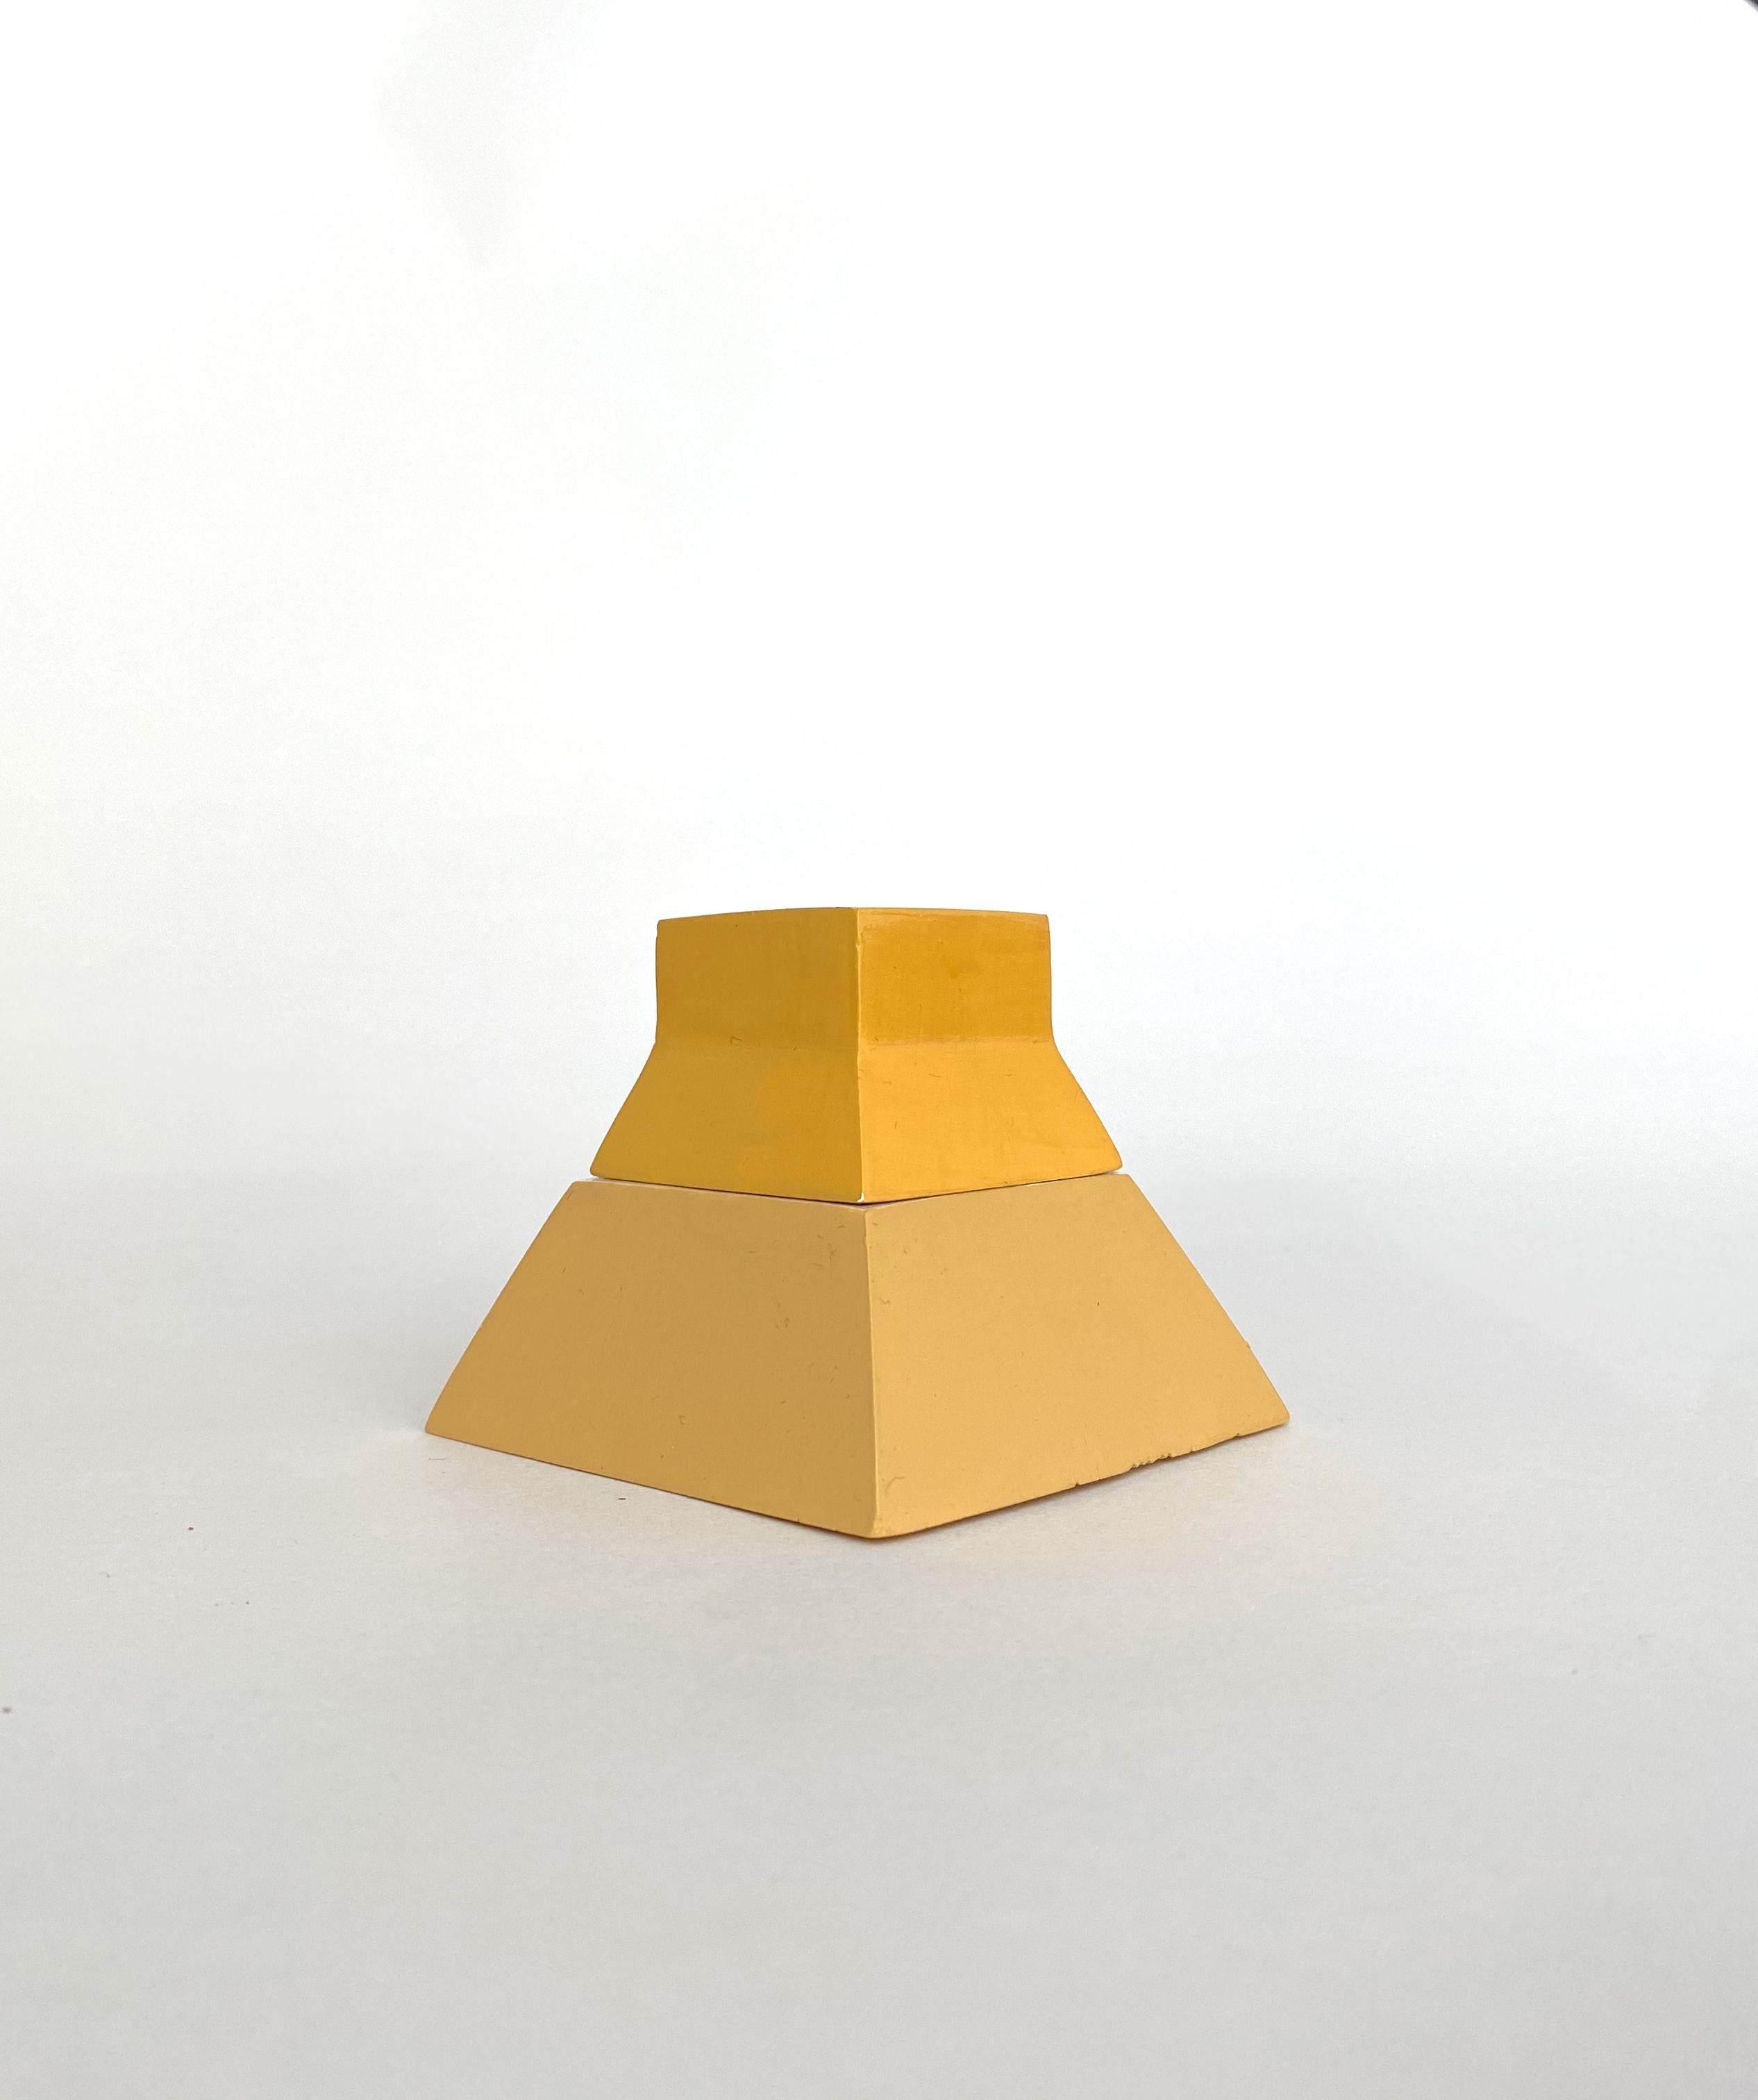 Nomadengefäß Laurence Pyramide von Gilles & Cecilie
Einzigartig
Abmessungen: H 6 x B 7 cm
MATERIAL: Keramik, zweifarbig gelb lackiert

Gilles und Cecilie Studio haben die Nomad Jar Family entwickelt, um das Zeichnen in drei Dimensionen zu erkunden.